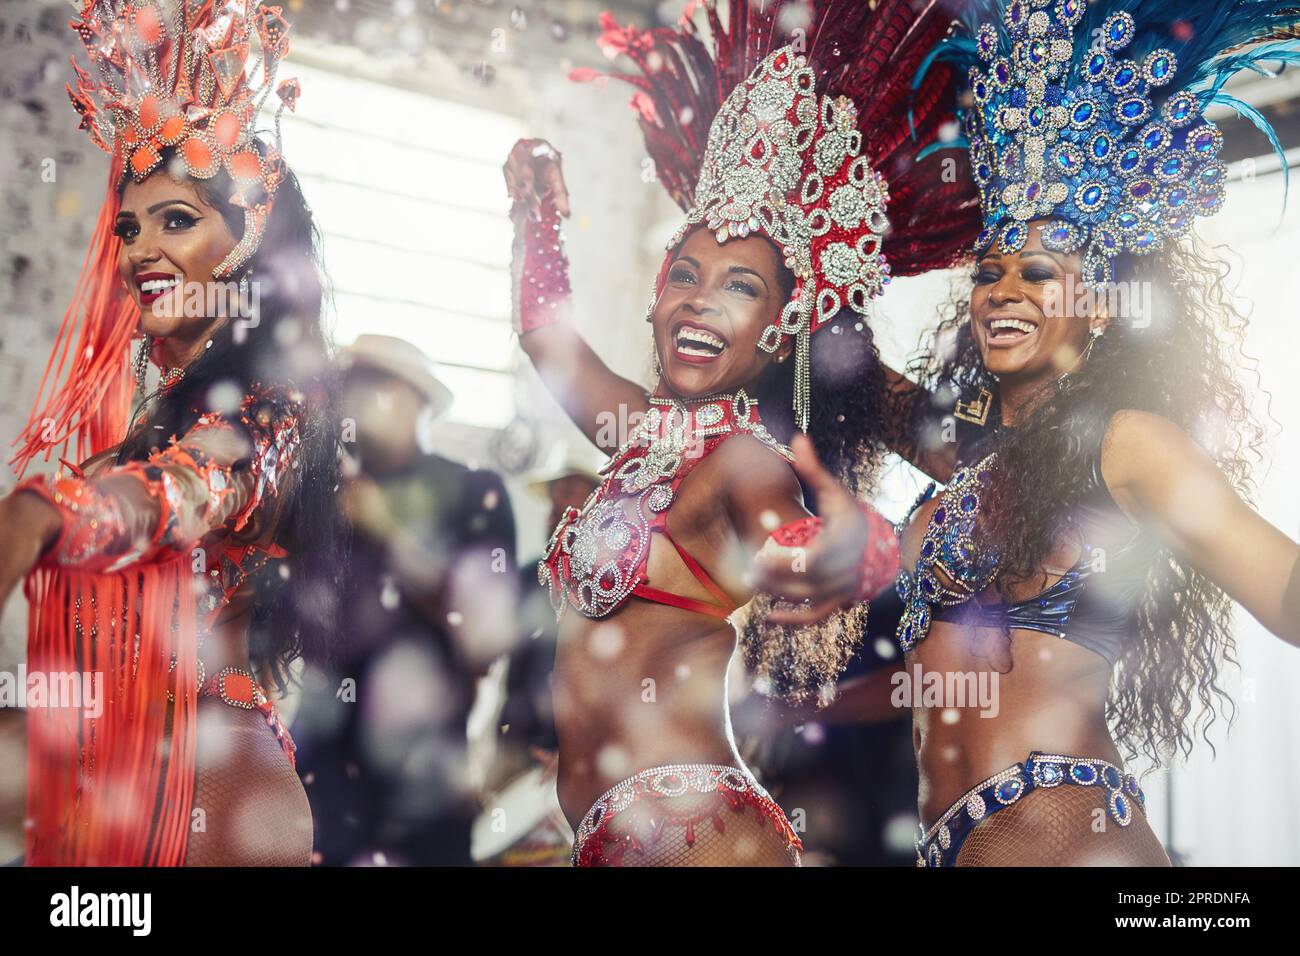 Schwingt euren Körper zu den Samba-Beats. samba-Tänzer treten an einem Karneval auf. Stockfoto